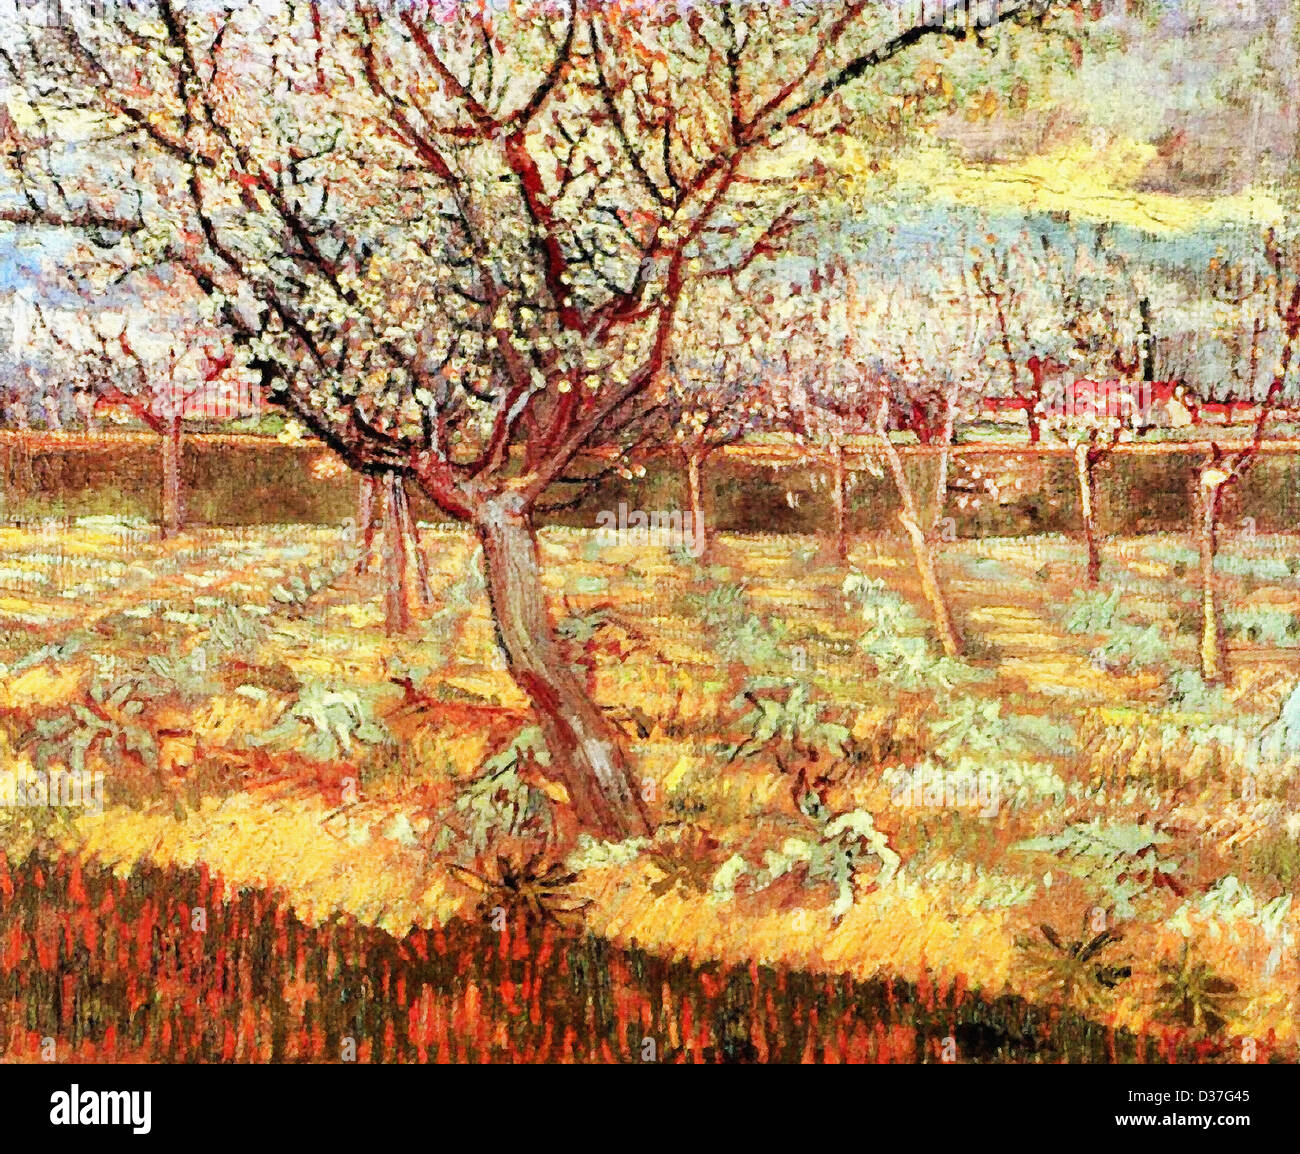 Vincent van Gogh, abricotiers en fleurs. 1888. Le postimpressionnisme. Huile sur toile. Lieu de création : Arles-Dur-Tech, France. Banque D'Images